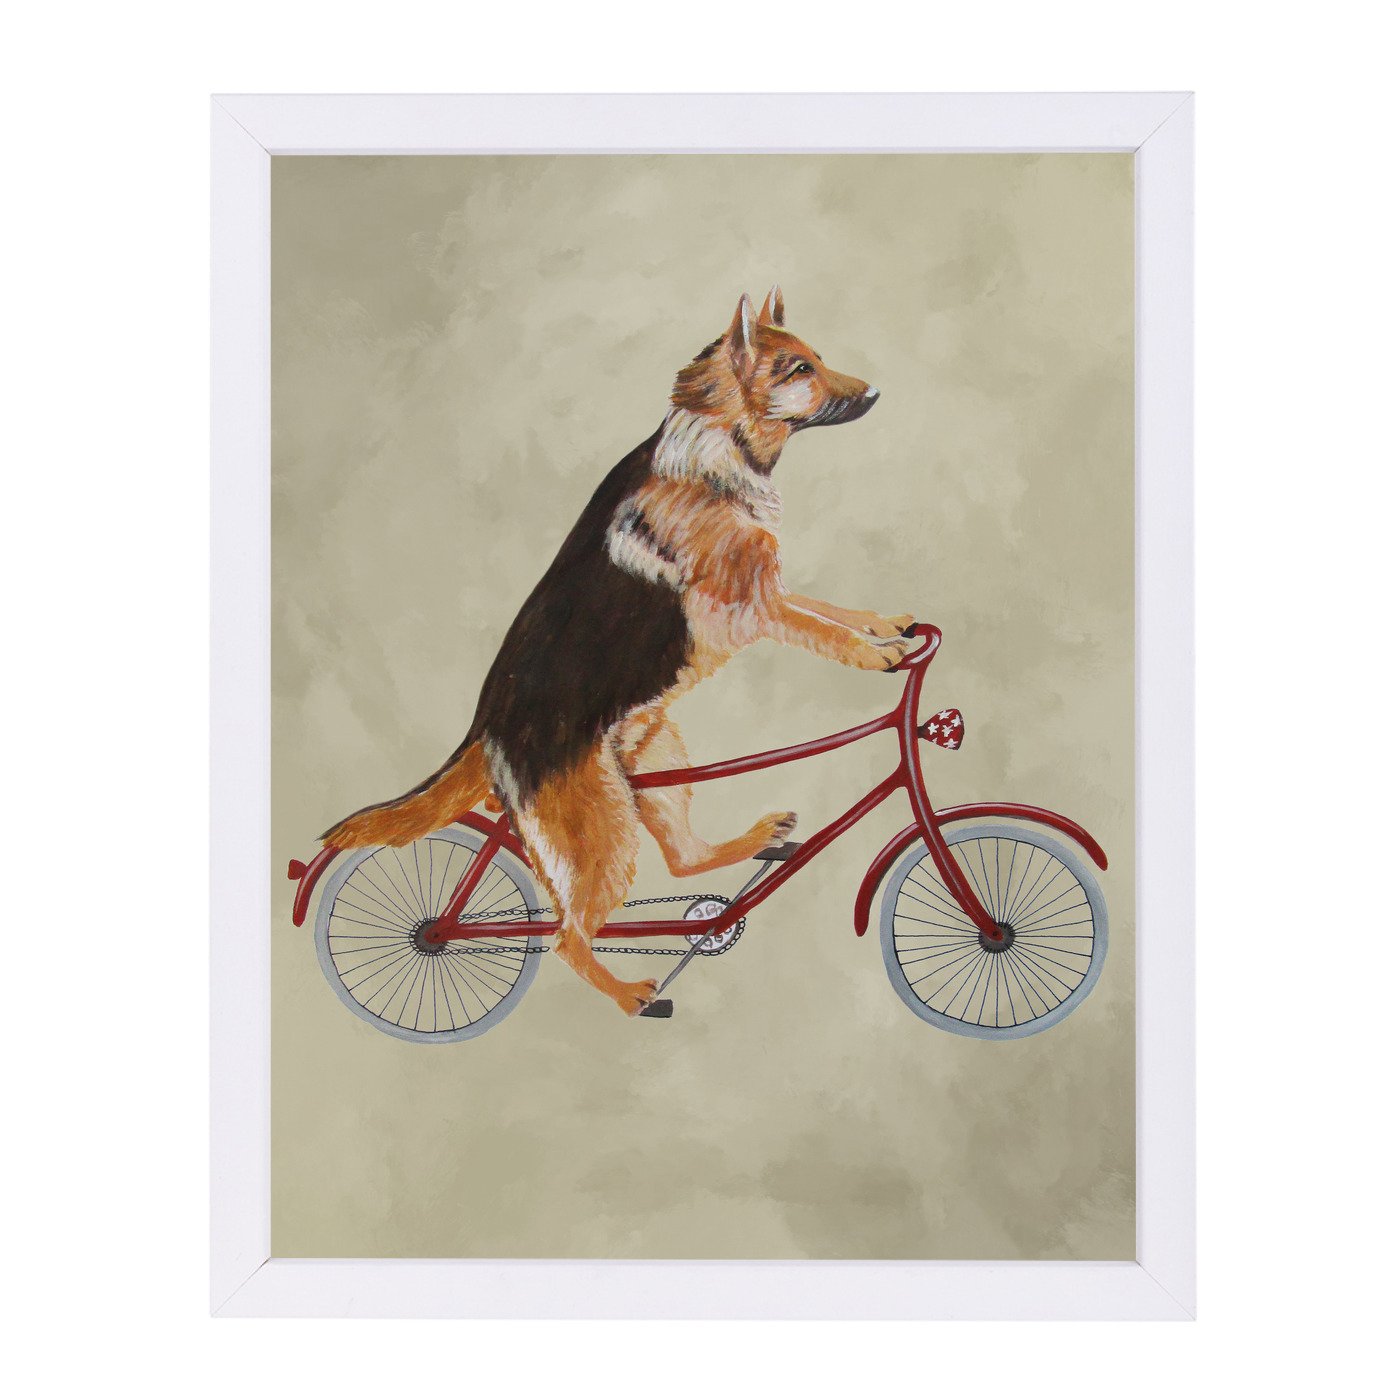 German Shepherd On Bicycle By Coco De Paris - Framed Print - Americanflat